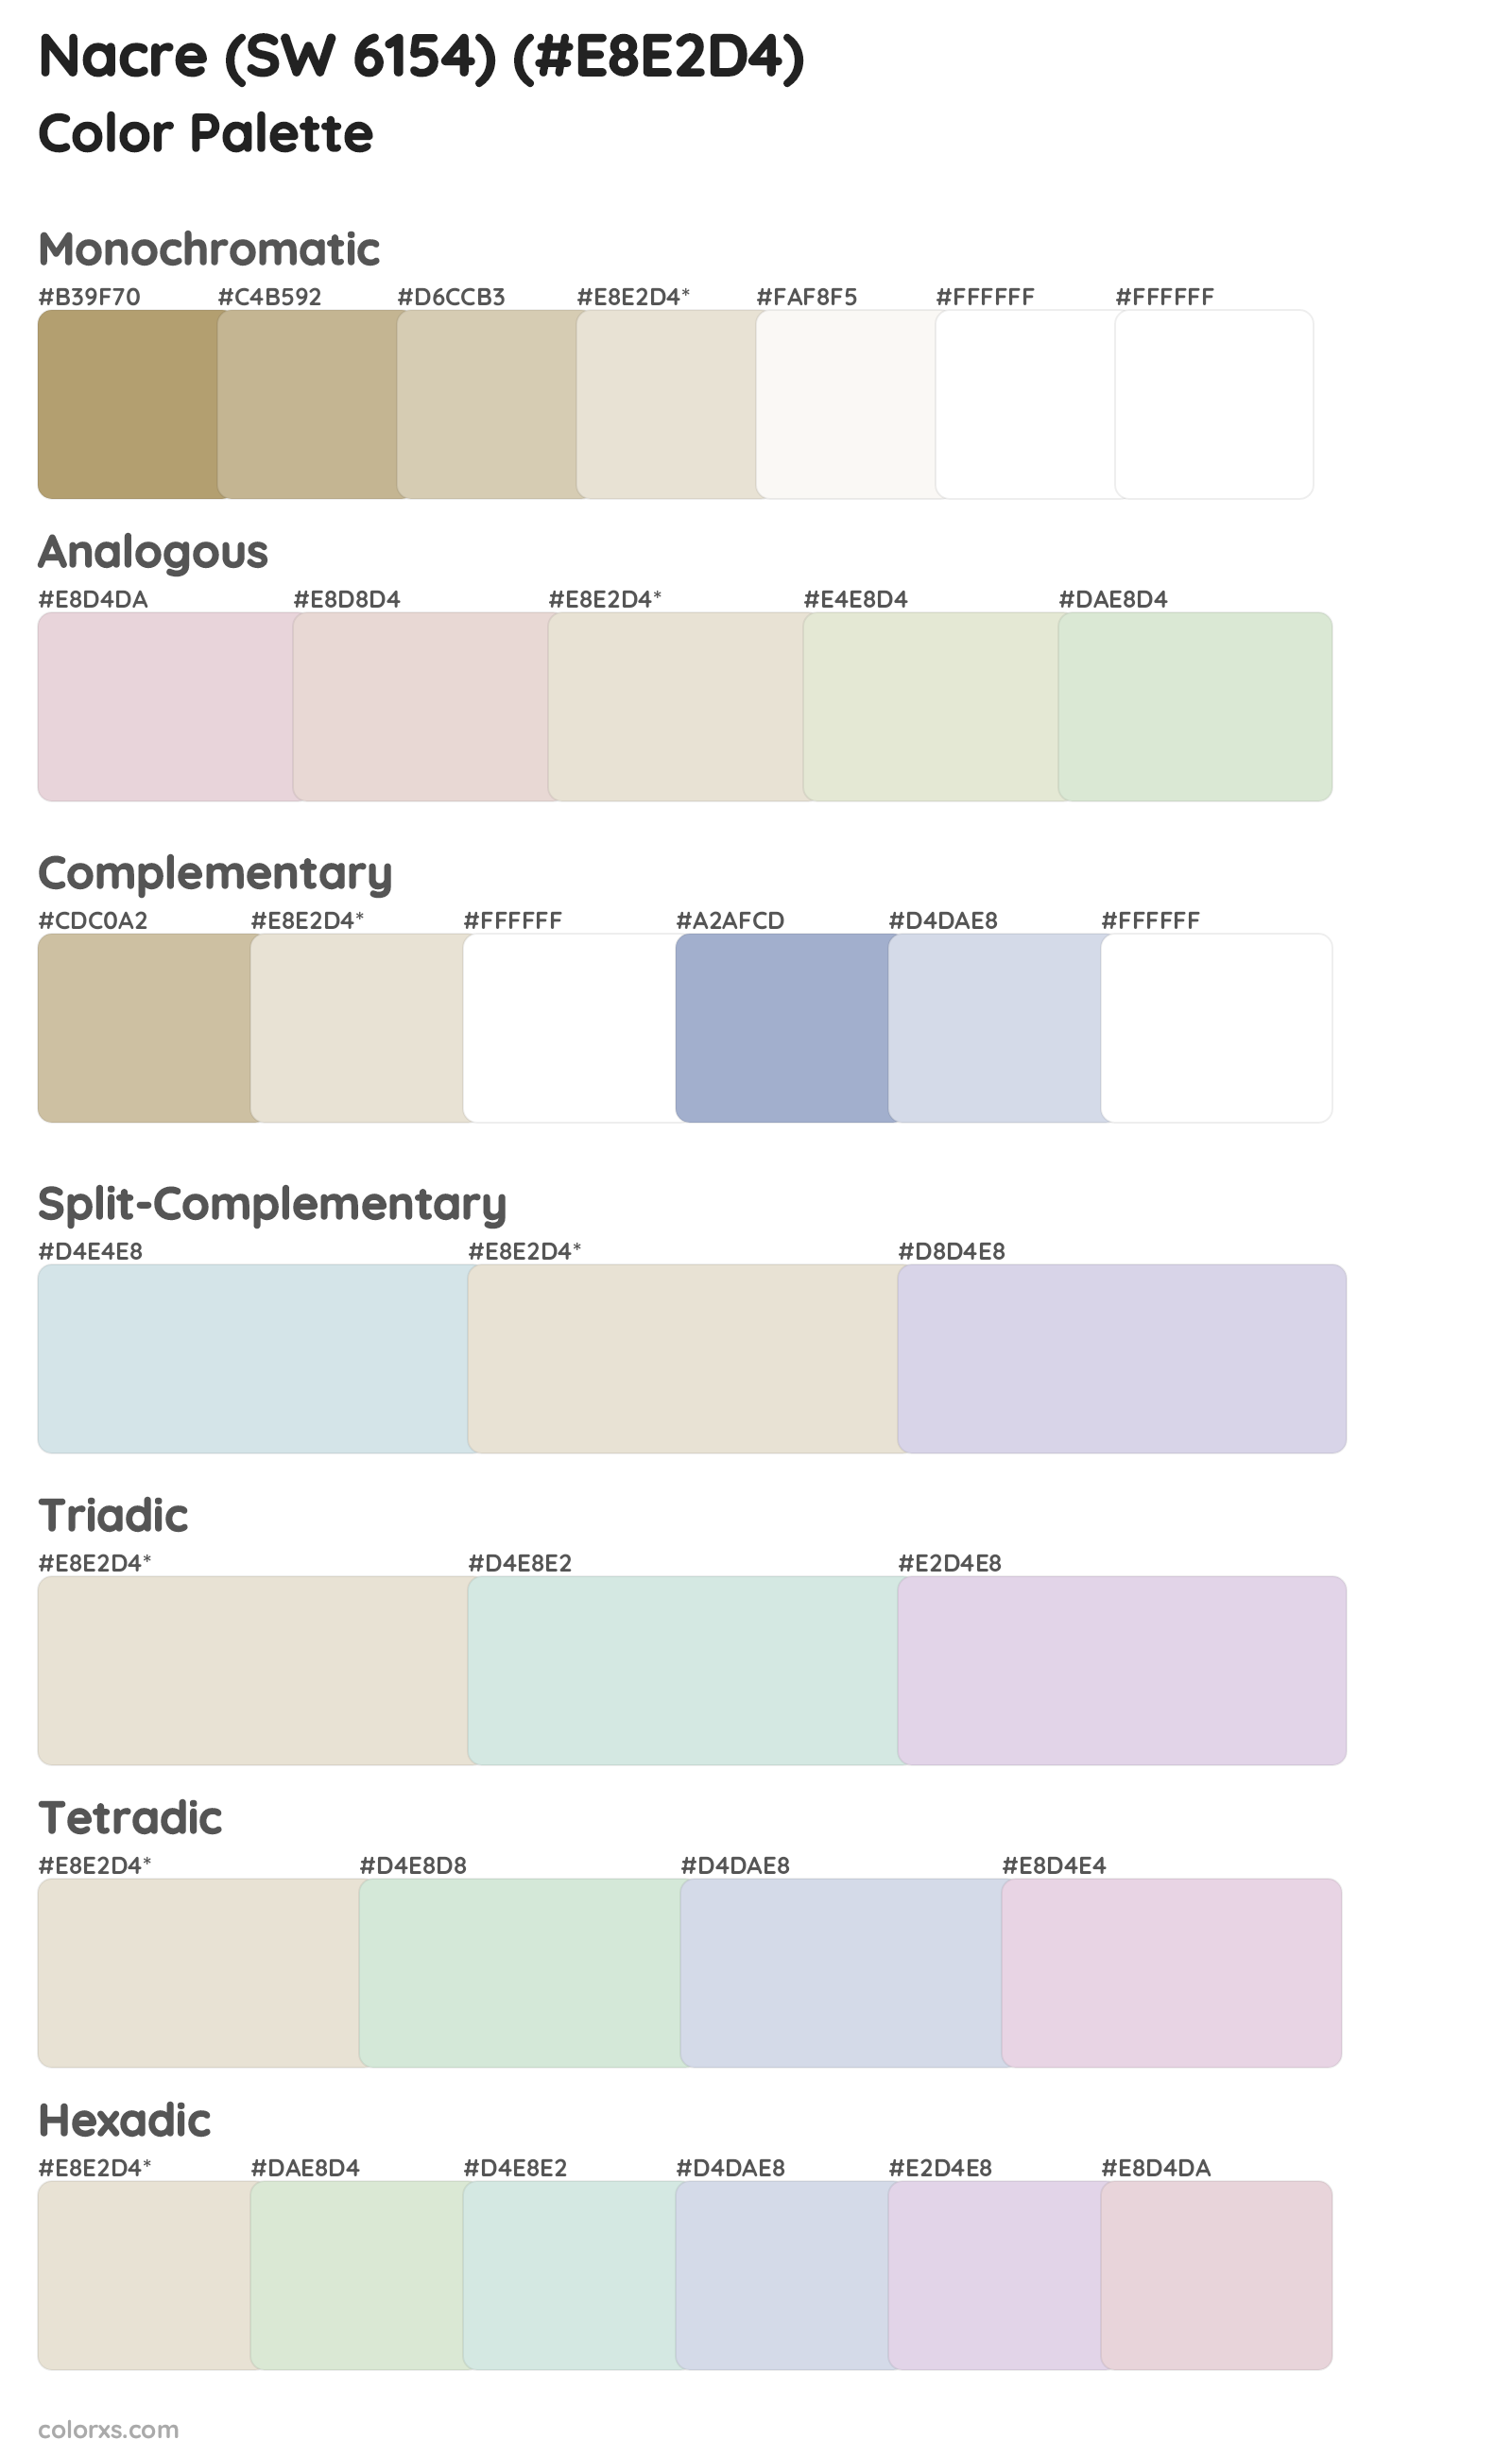 Nacre (SW 6154) Color Scheme Palettes